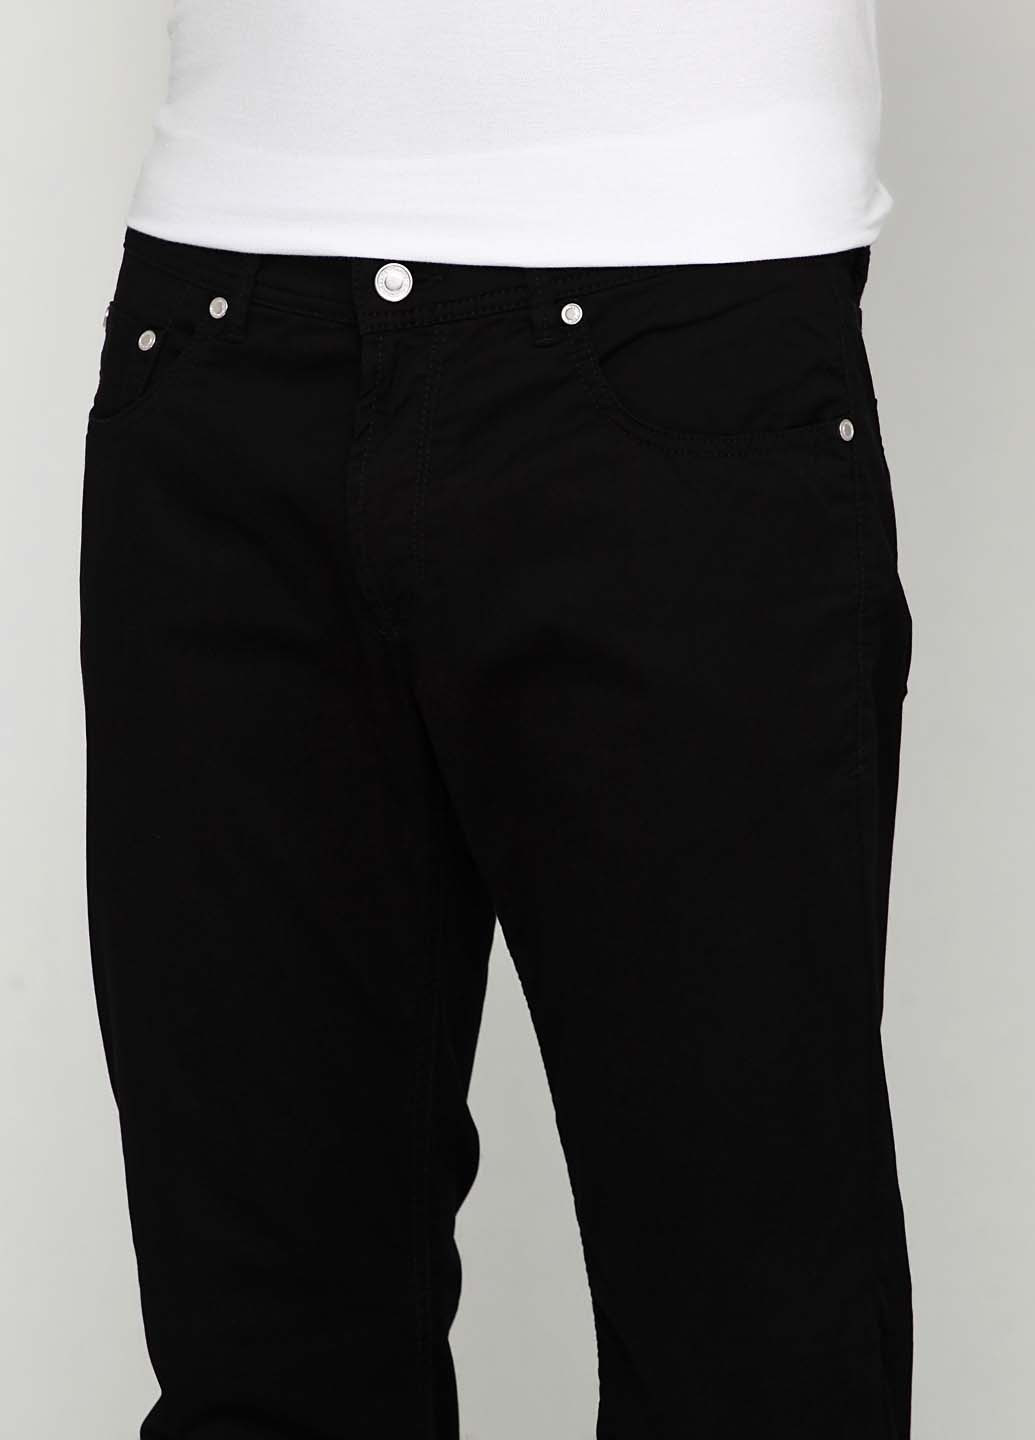 Черные регюлар фит джинсы BD-11-002 Baldessarini